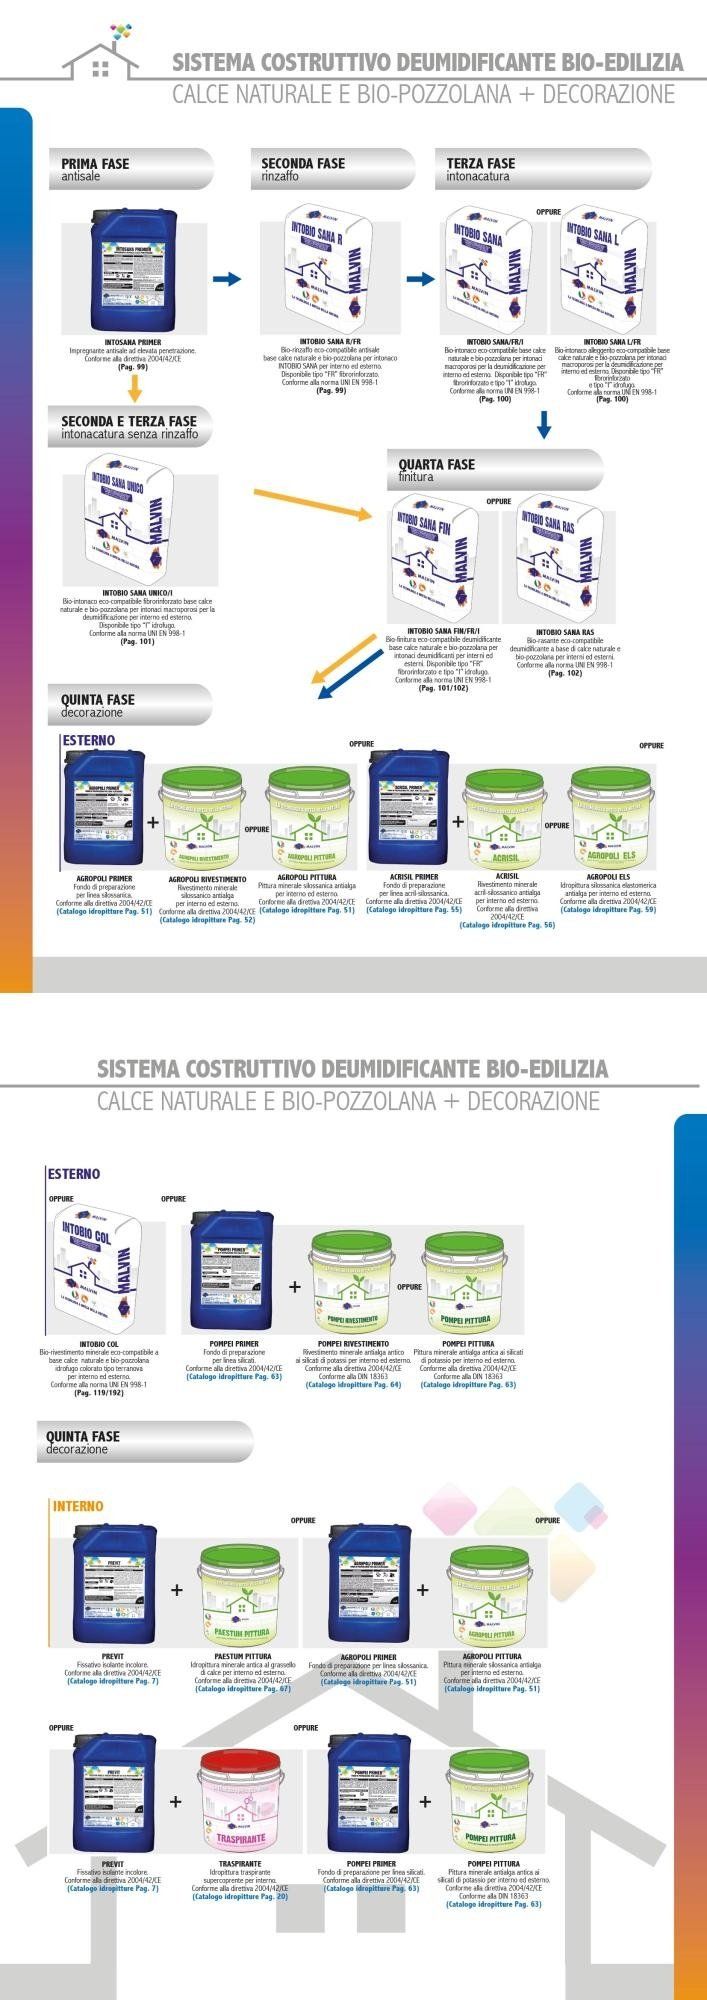 Sistema Costruttivo Deumidificante Bio-edilizia (Calce e Bio-Pozzolana)